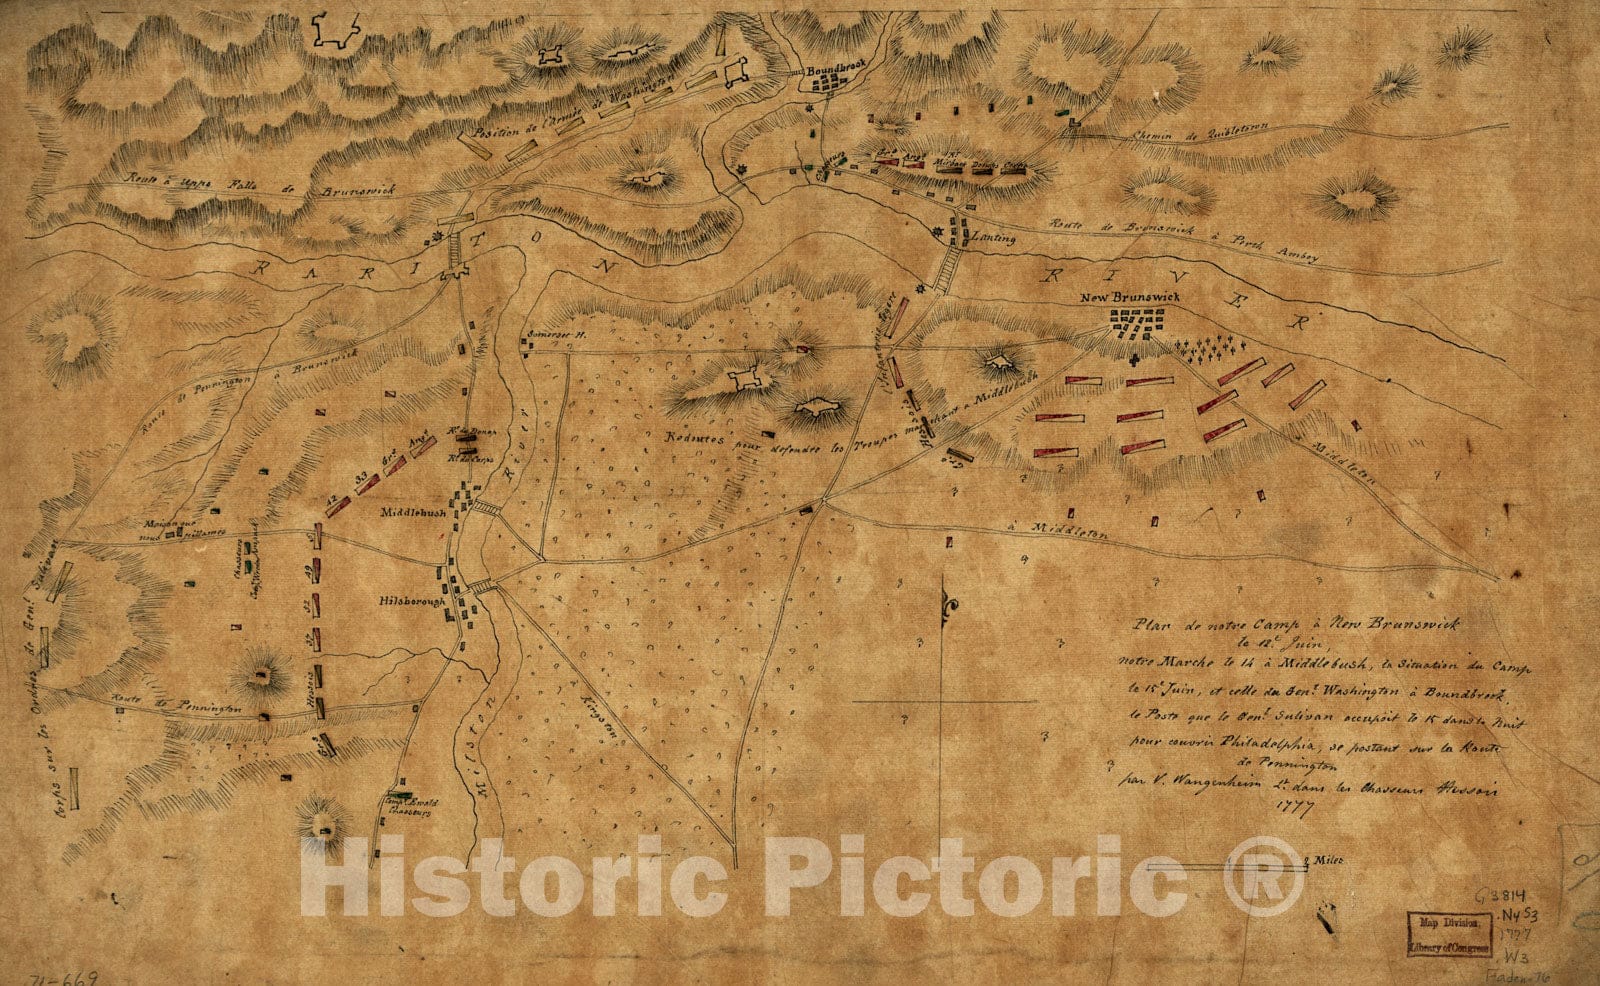 Historical Map, 1777 Plan de Notre Camp a New Brunswick le 12e. juin : Notre Marche le 14 a Middlebush, la Situation du Camp le 15e juin, et cette du Genl. Washington, Vintage Wall Art